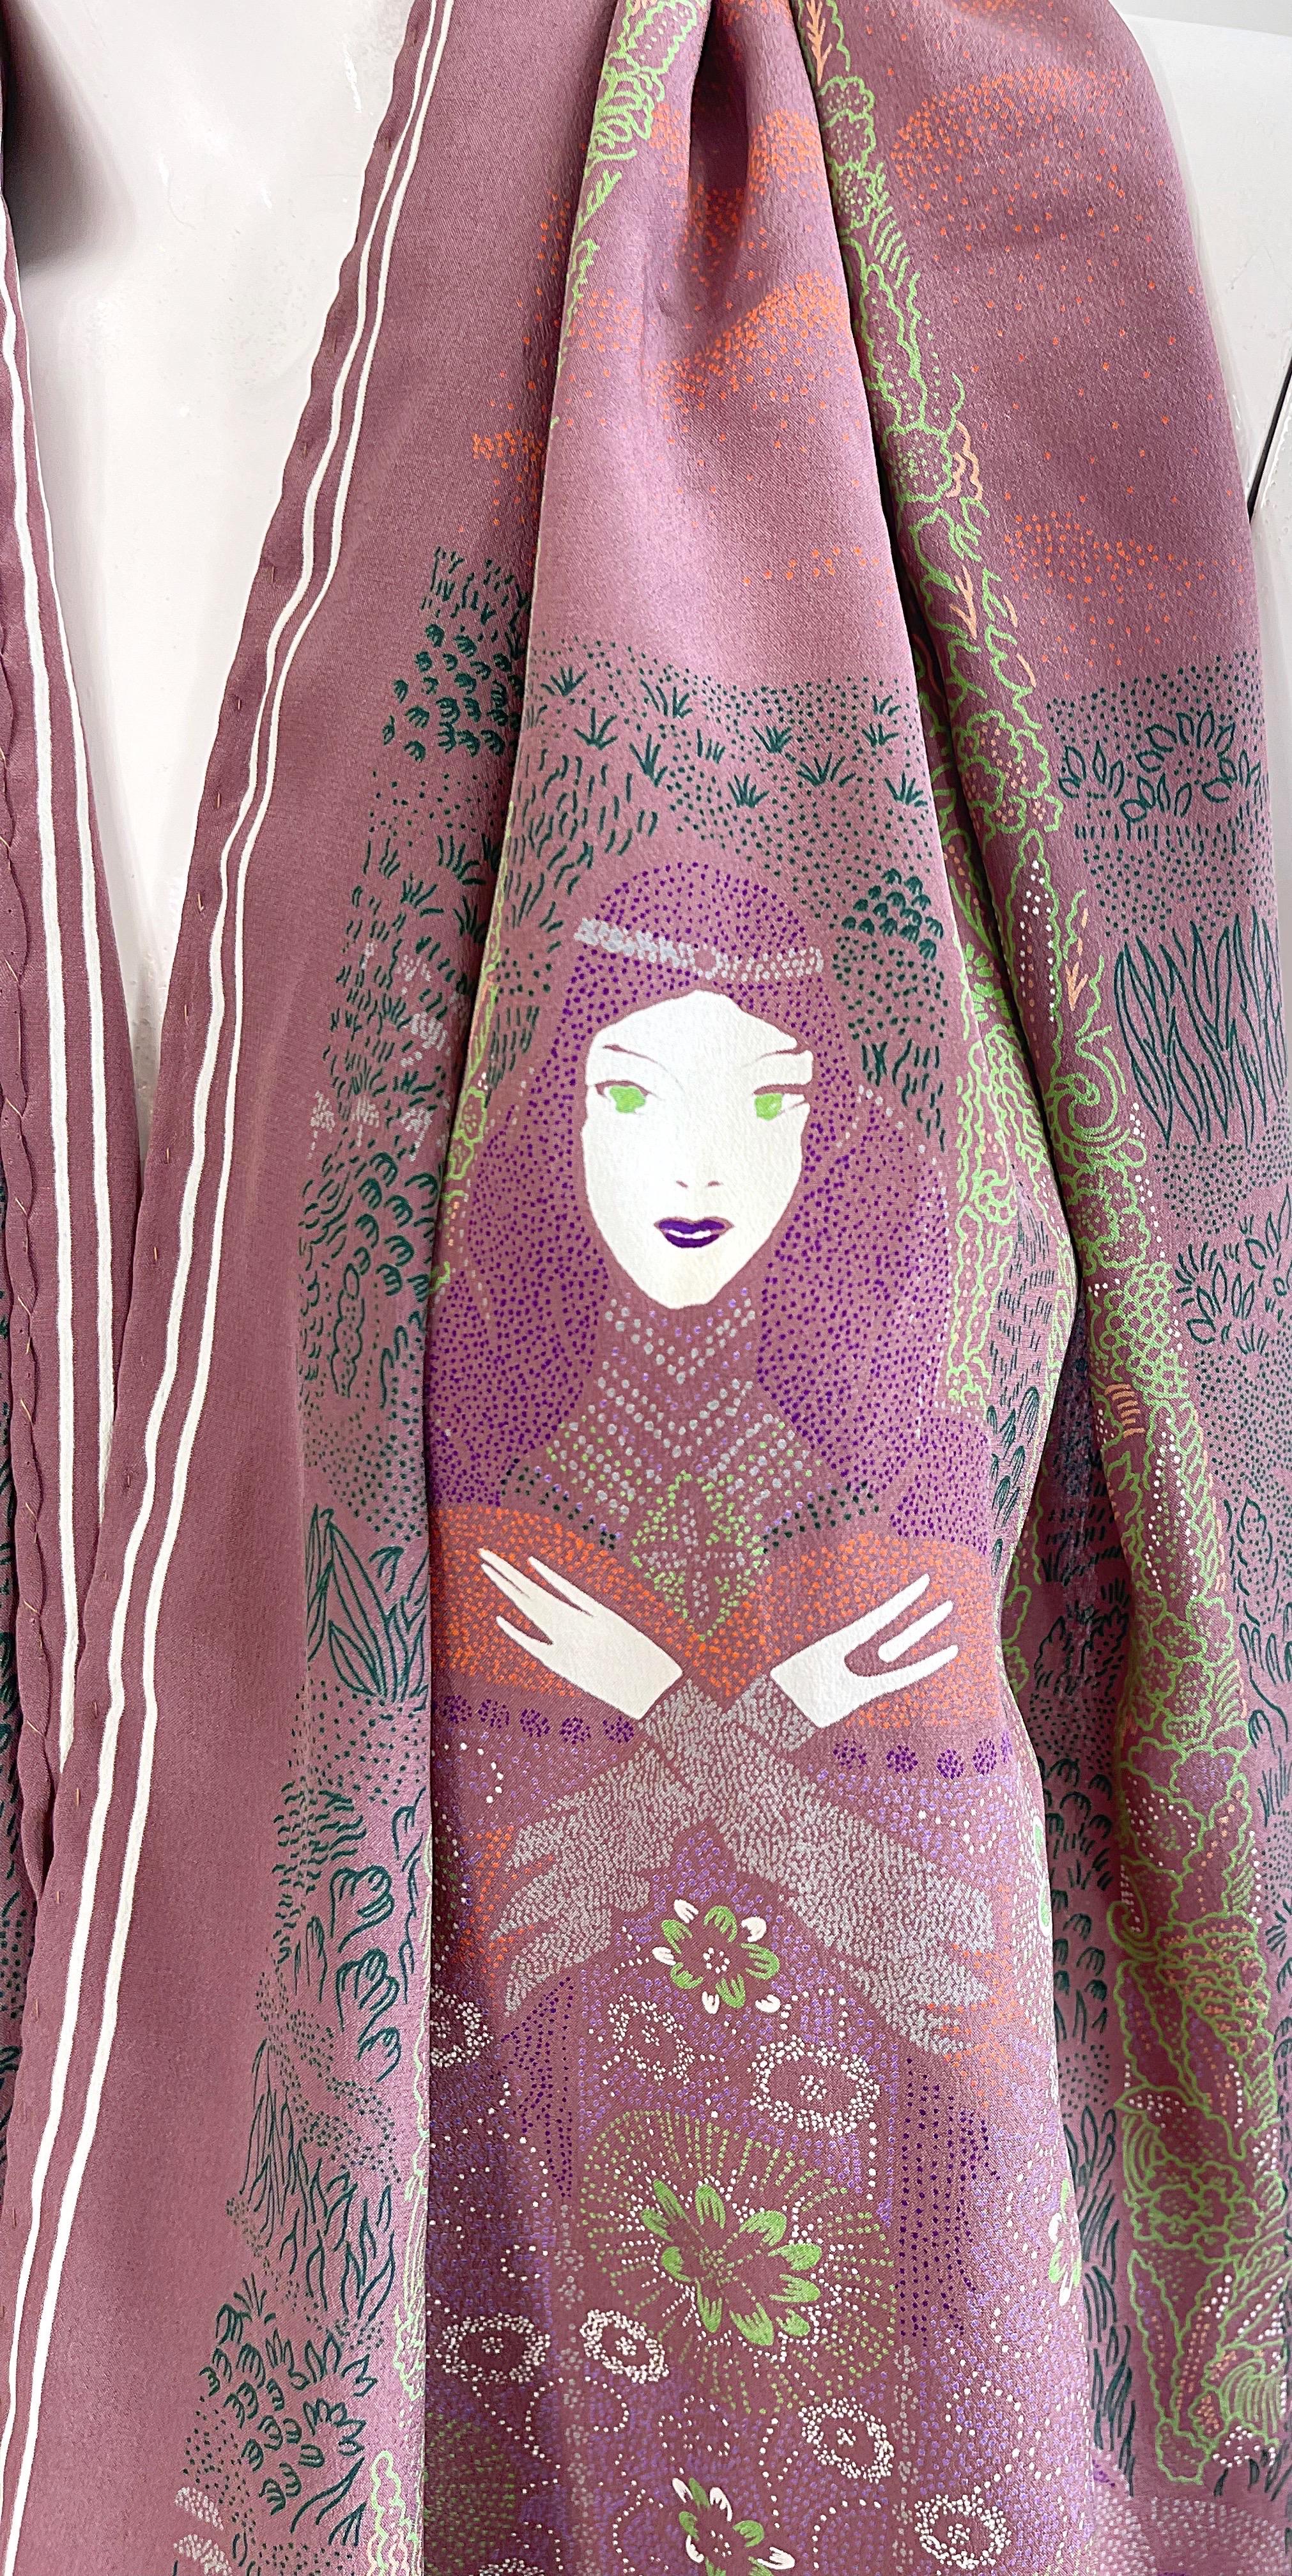 Superbe foulard en soie de Bottega Veneta datant de l'automne 1981. Inspiré par Klimt avec deux femmes de chaque côté de l'écharpe. De belles couleurs de mauve, de vert, de violet, de rose, d'orange et de blanc. Bottega Veneta imprimé en blanc sur